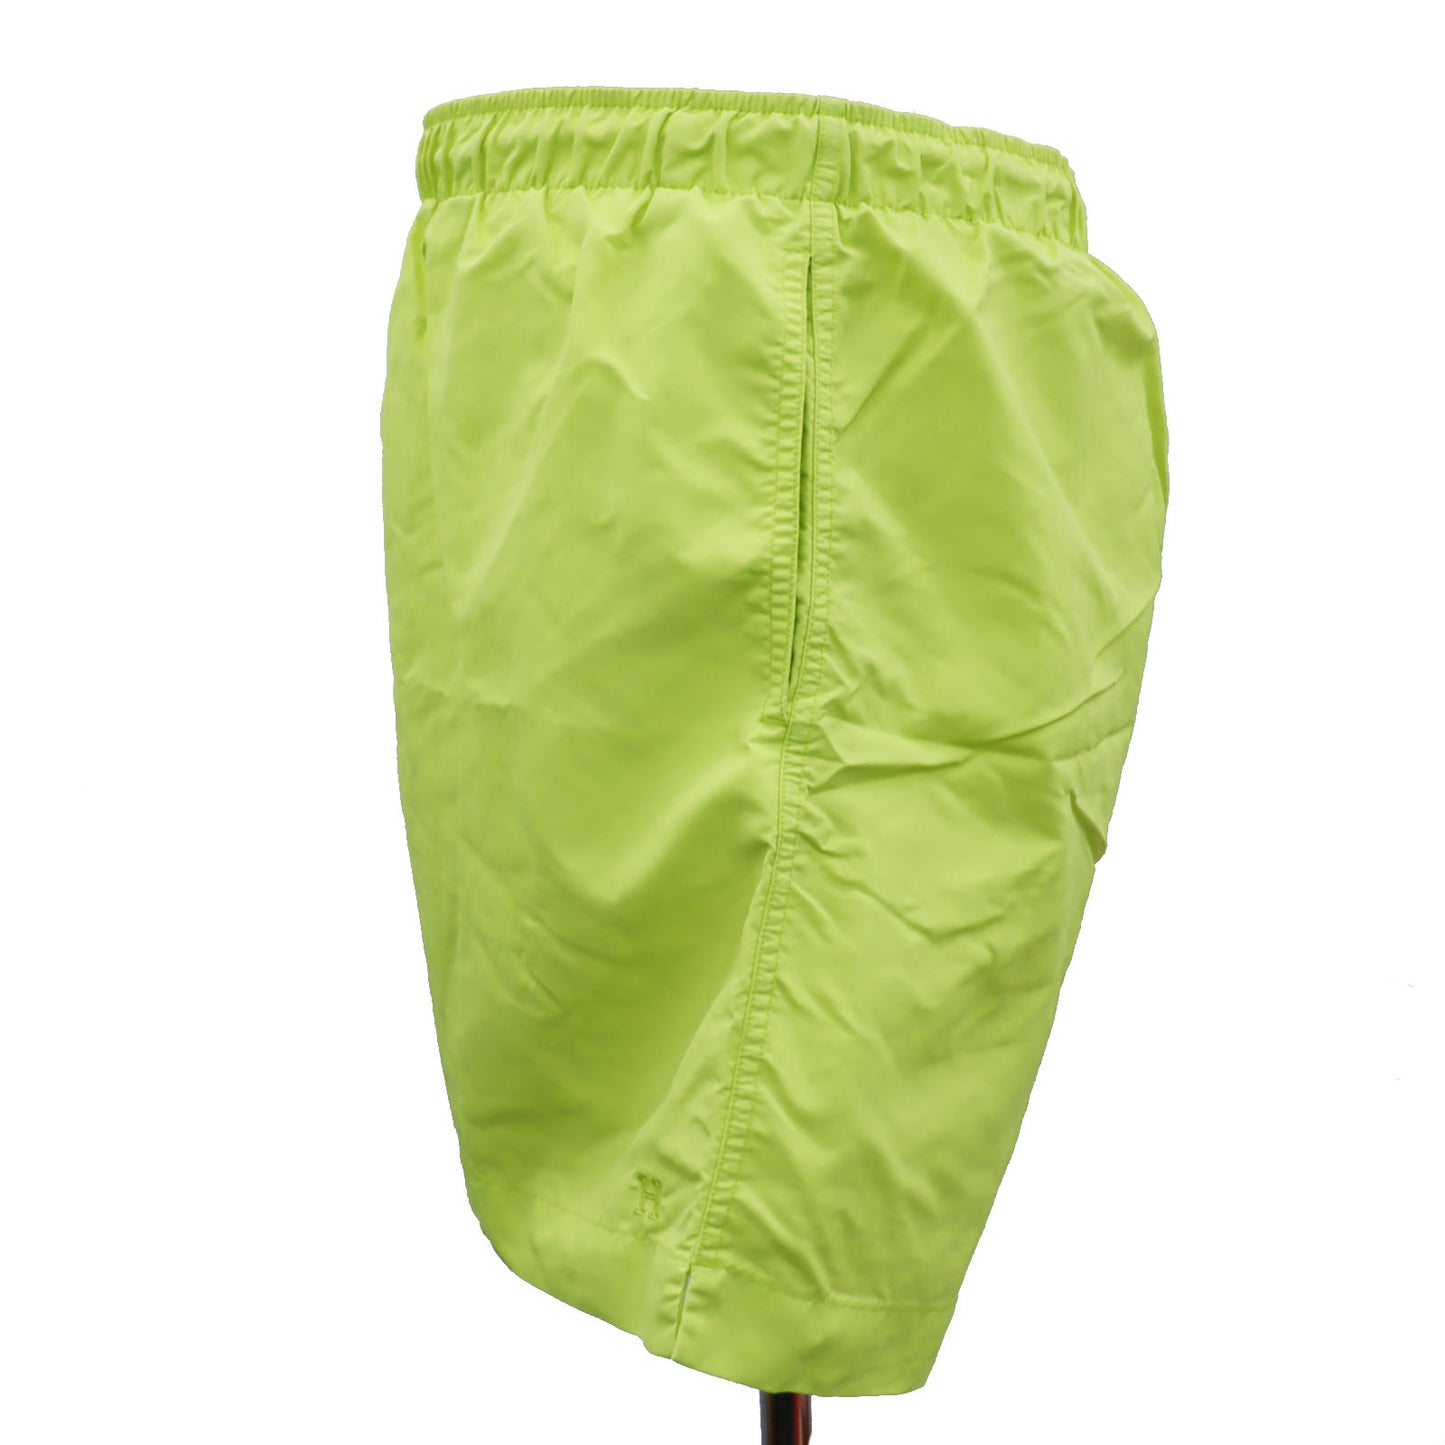 HERMES Logos Swim Pants Neon Yellow Nylon Size L #AG688